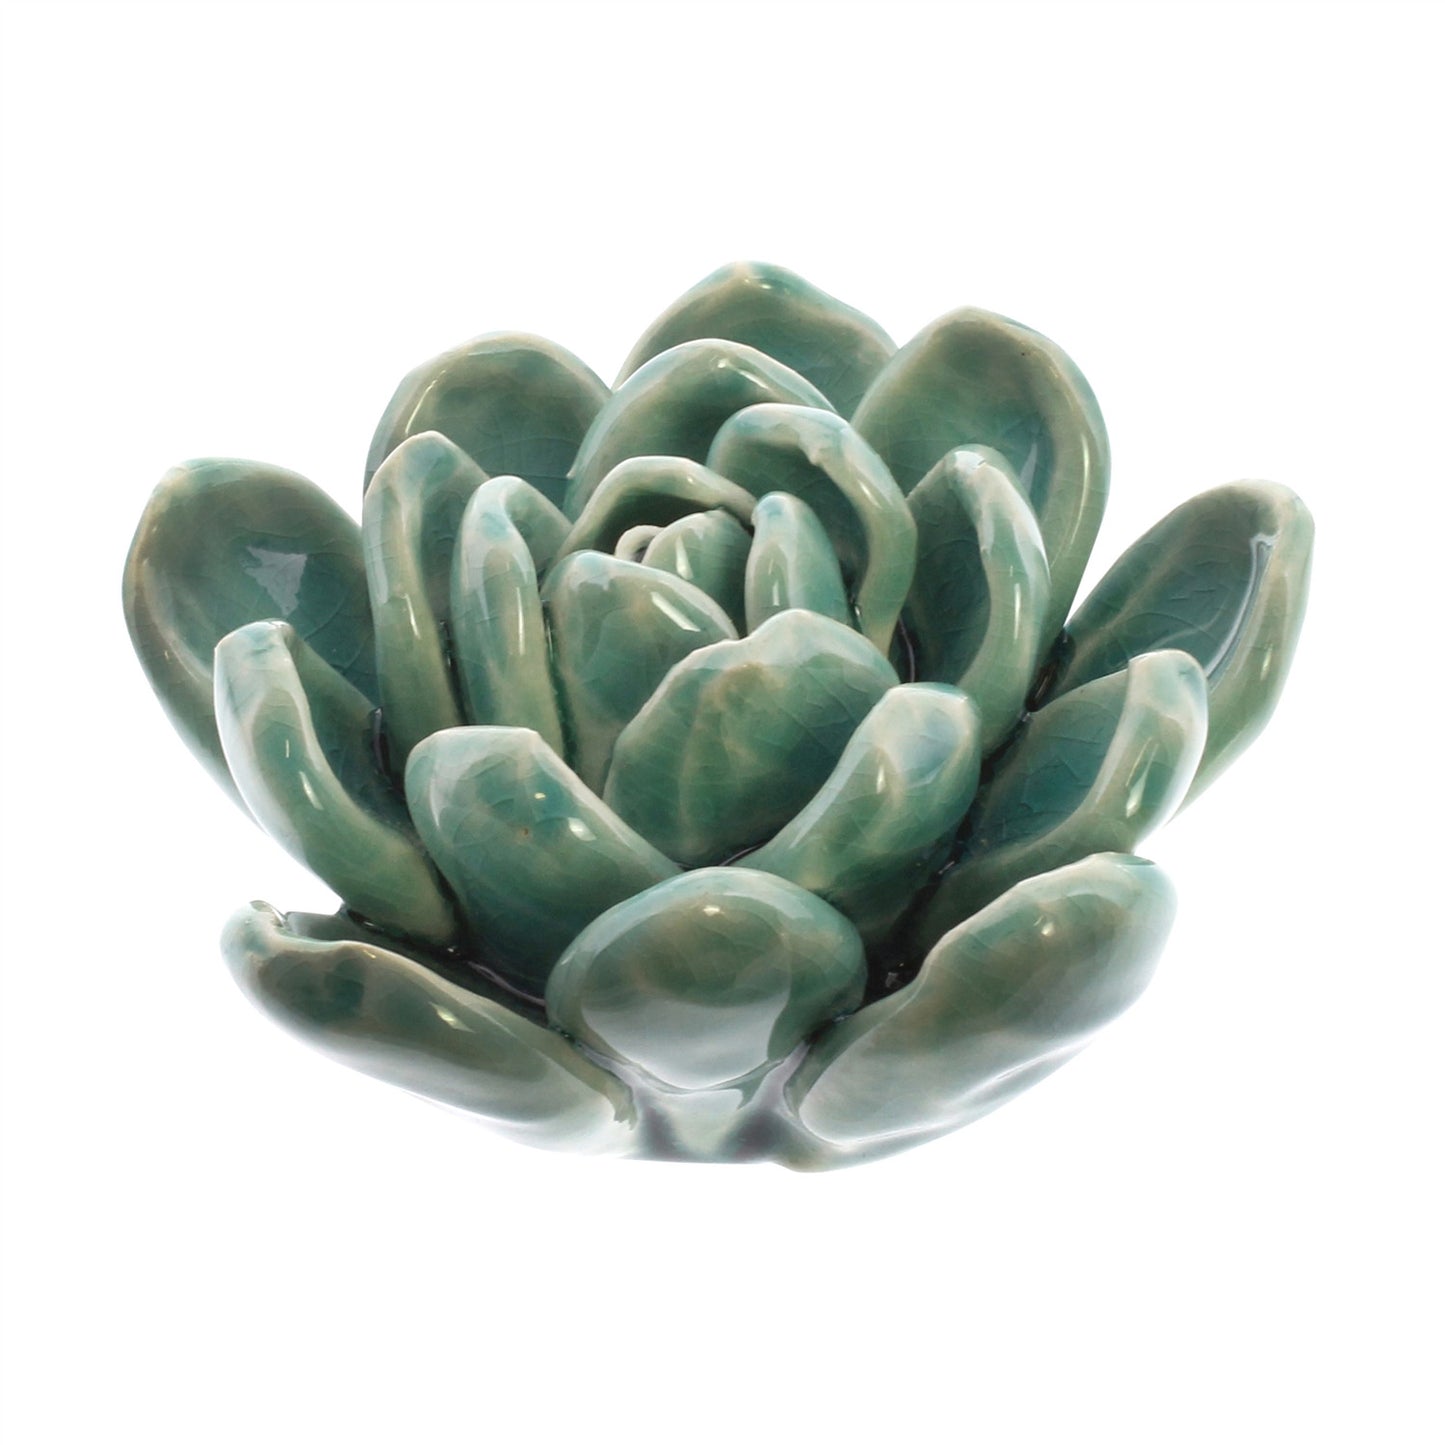 Ceramic Succulent medium